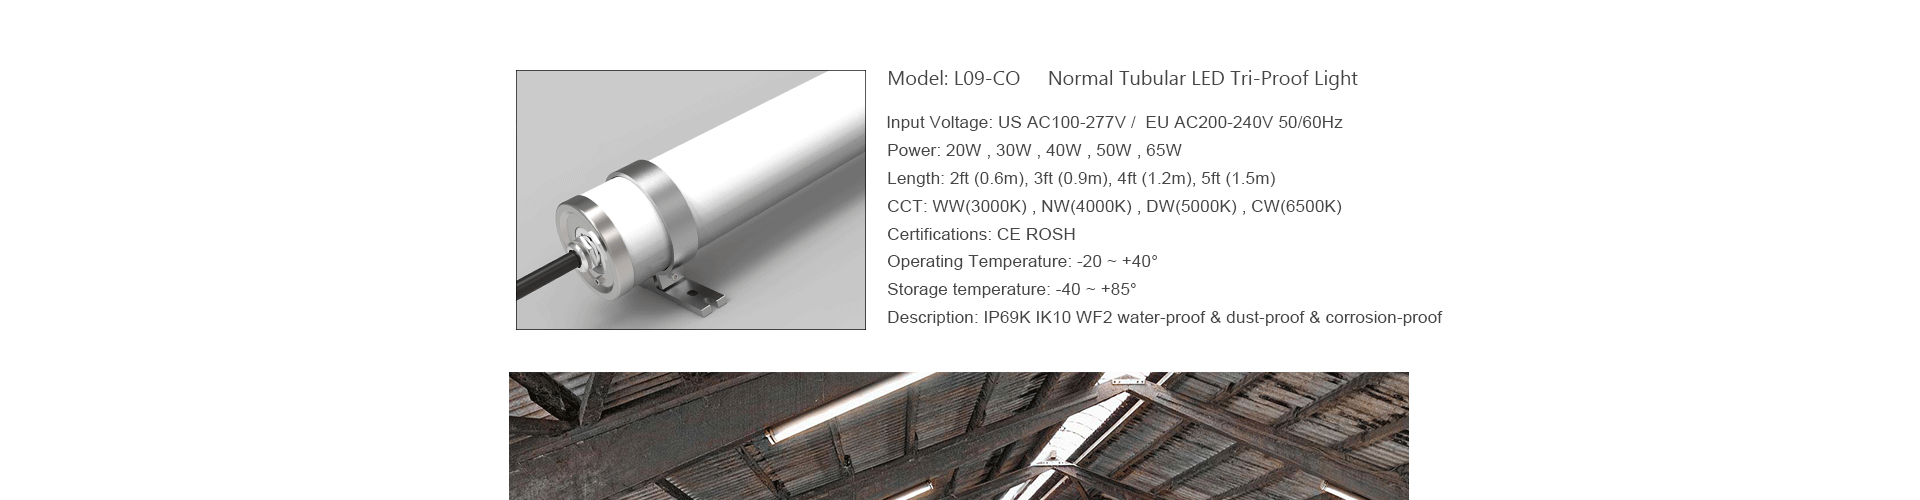 Tubular LED Tri-proof Light L09-CO